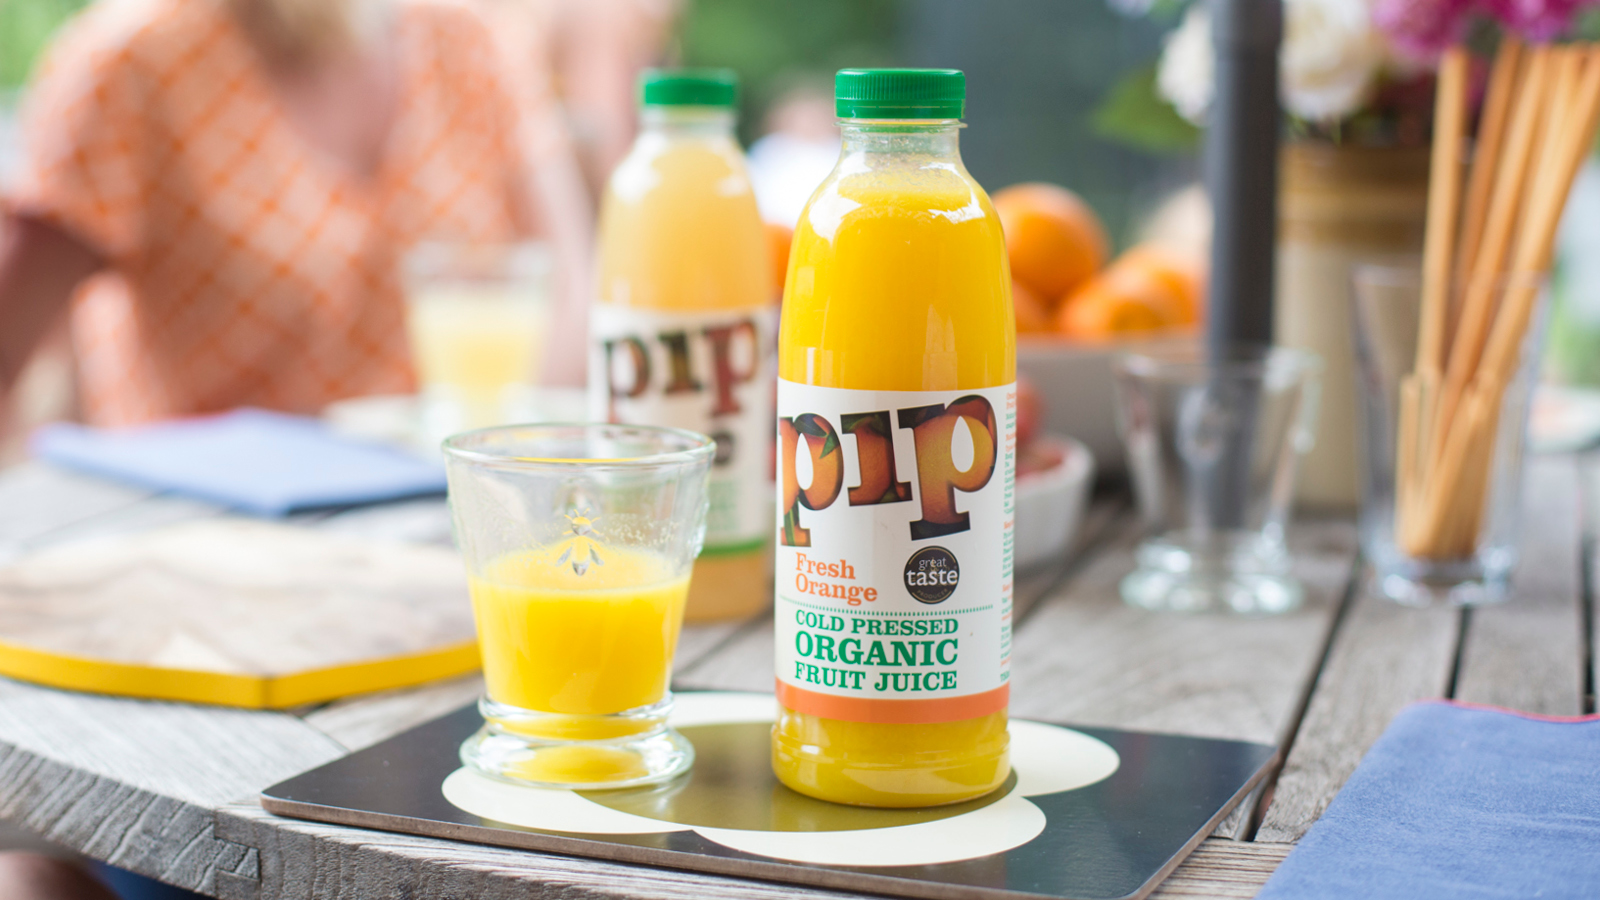 Pip bottled orange juice